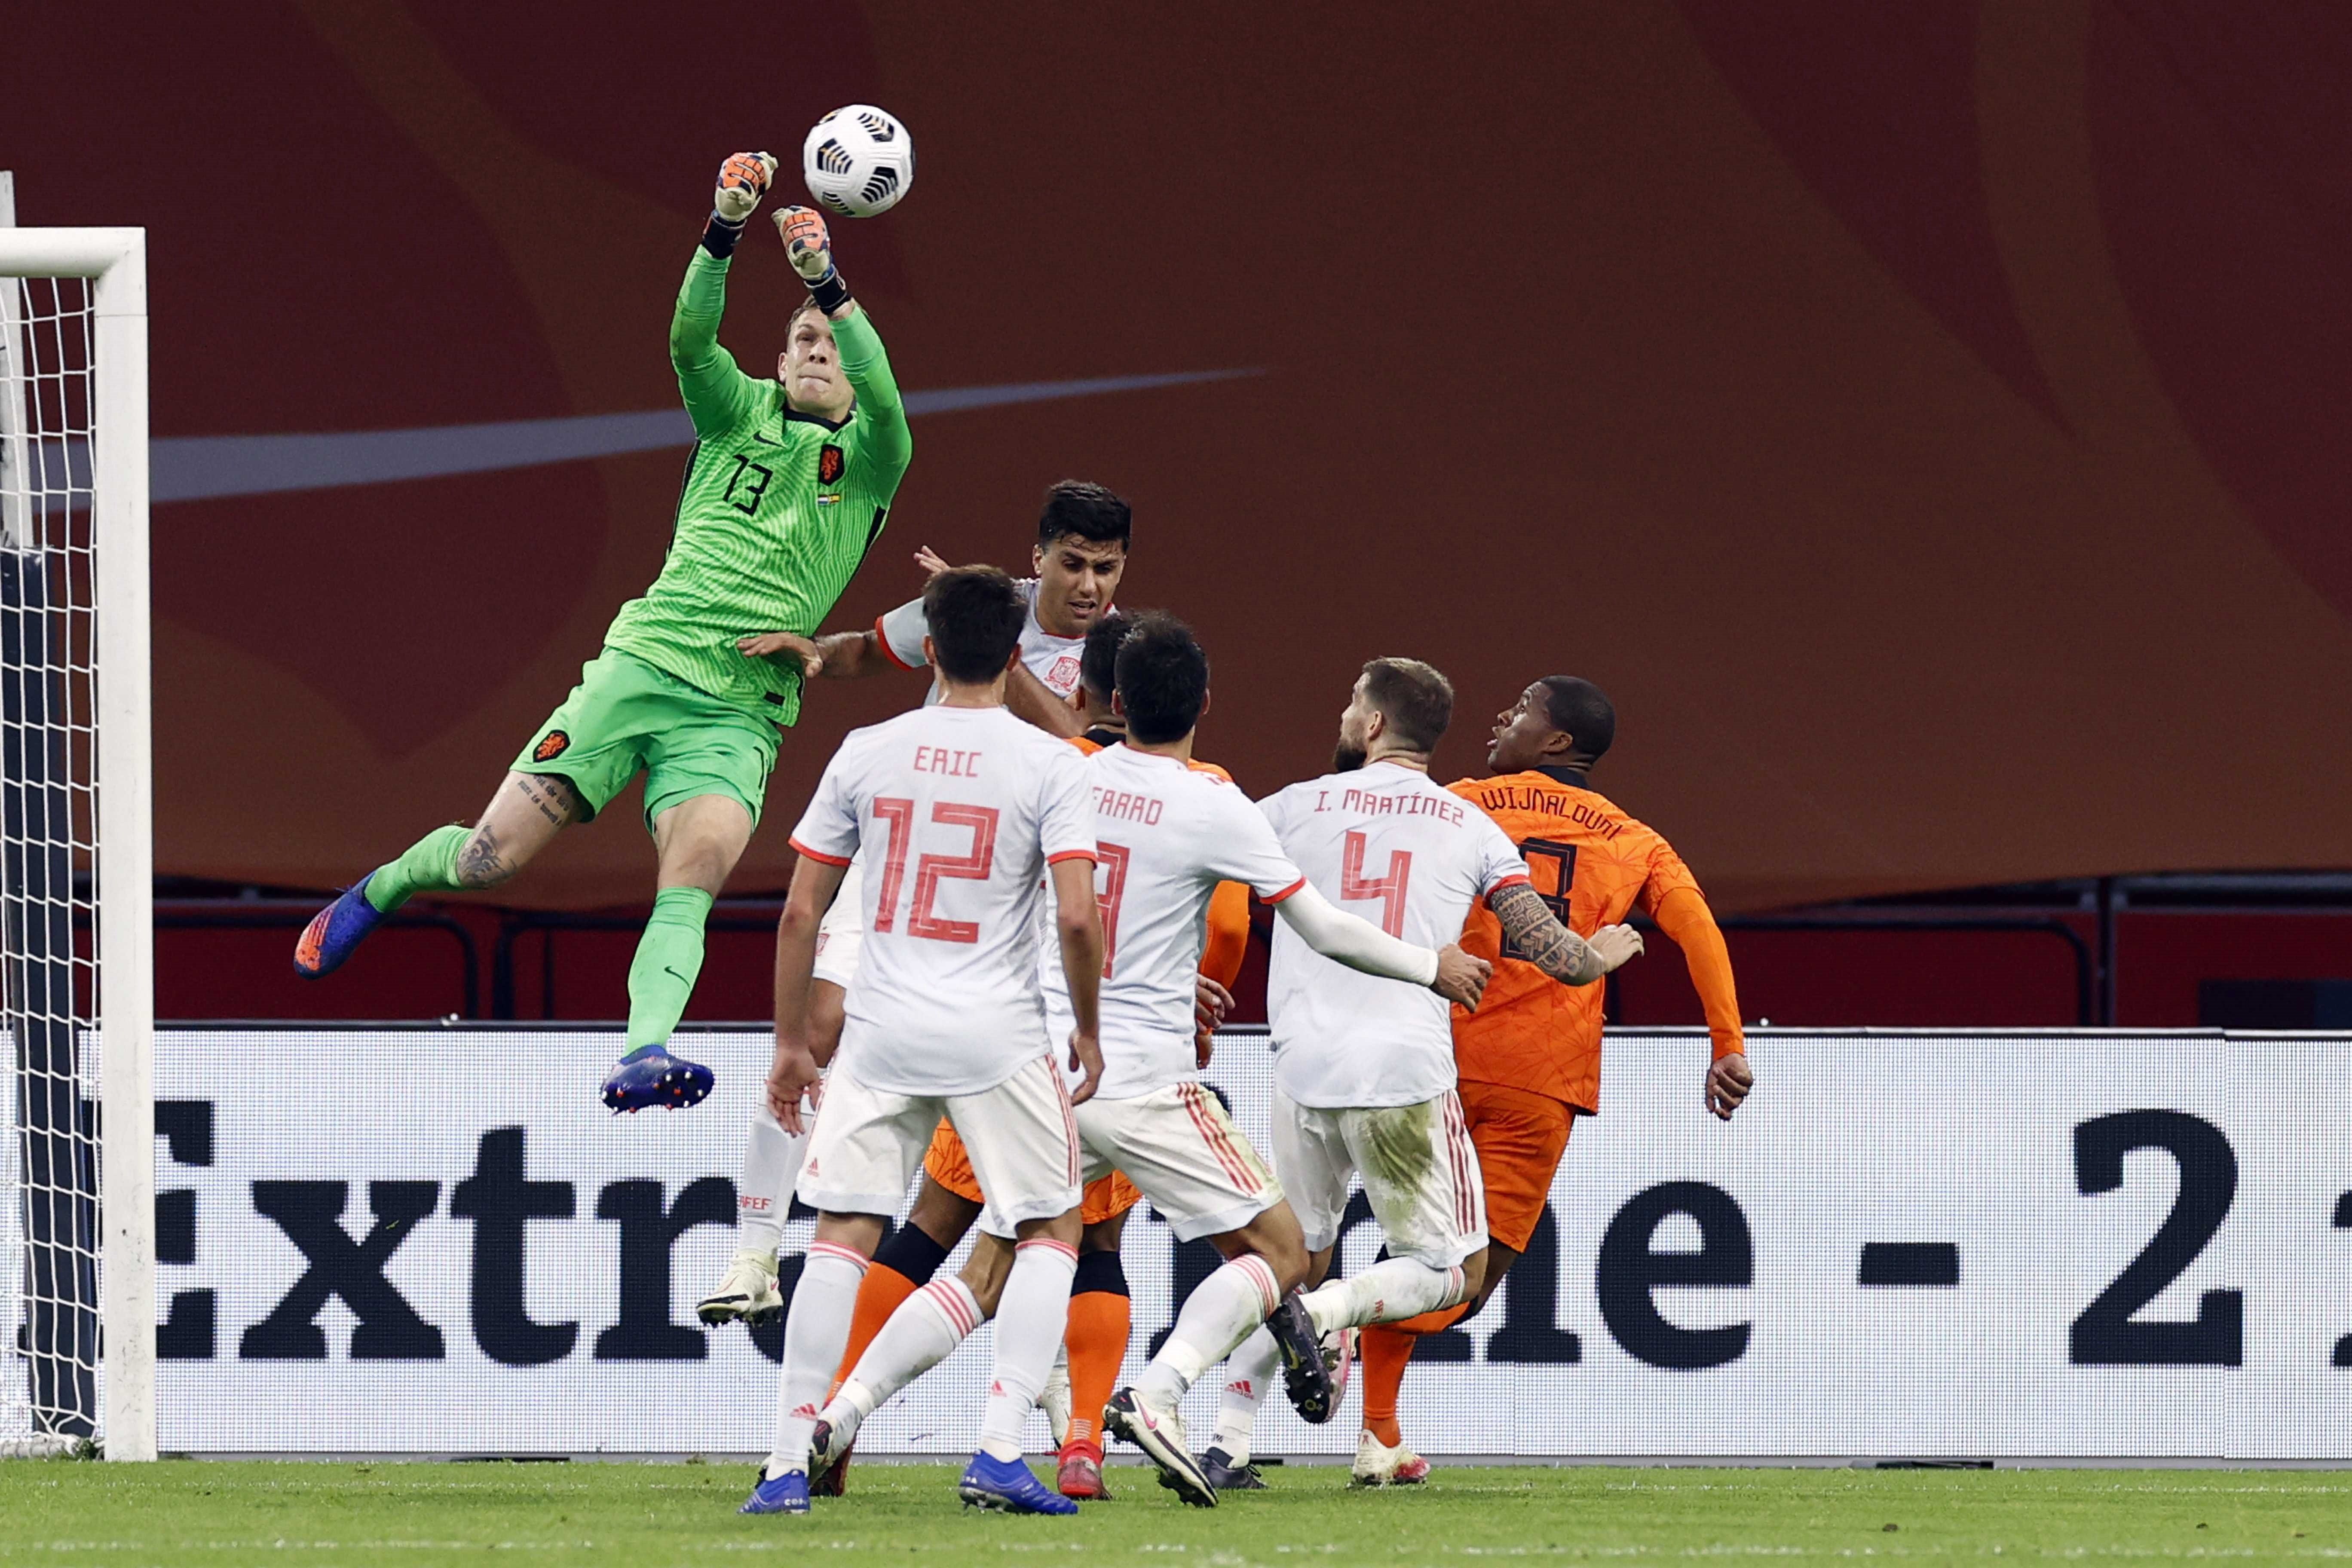 España y Países Bajos firman un justo empate en el Johan Cruyff (1-1)